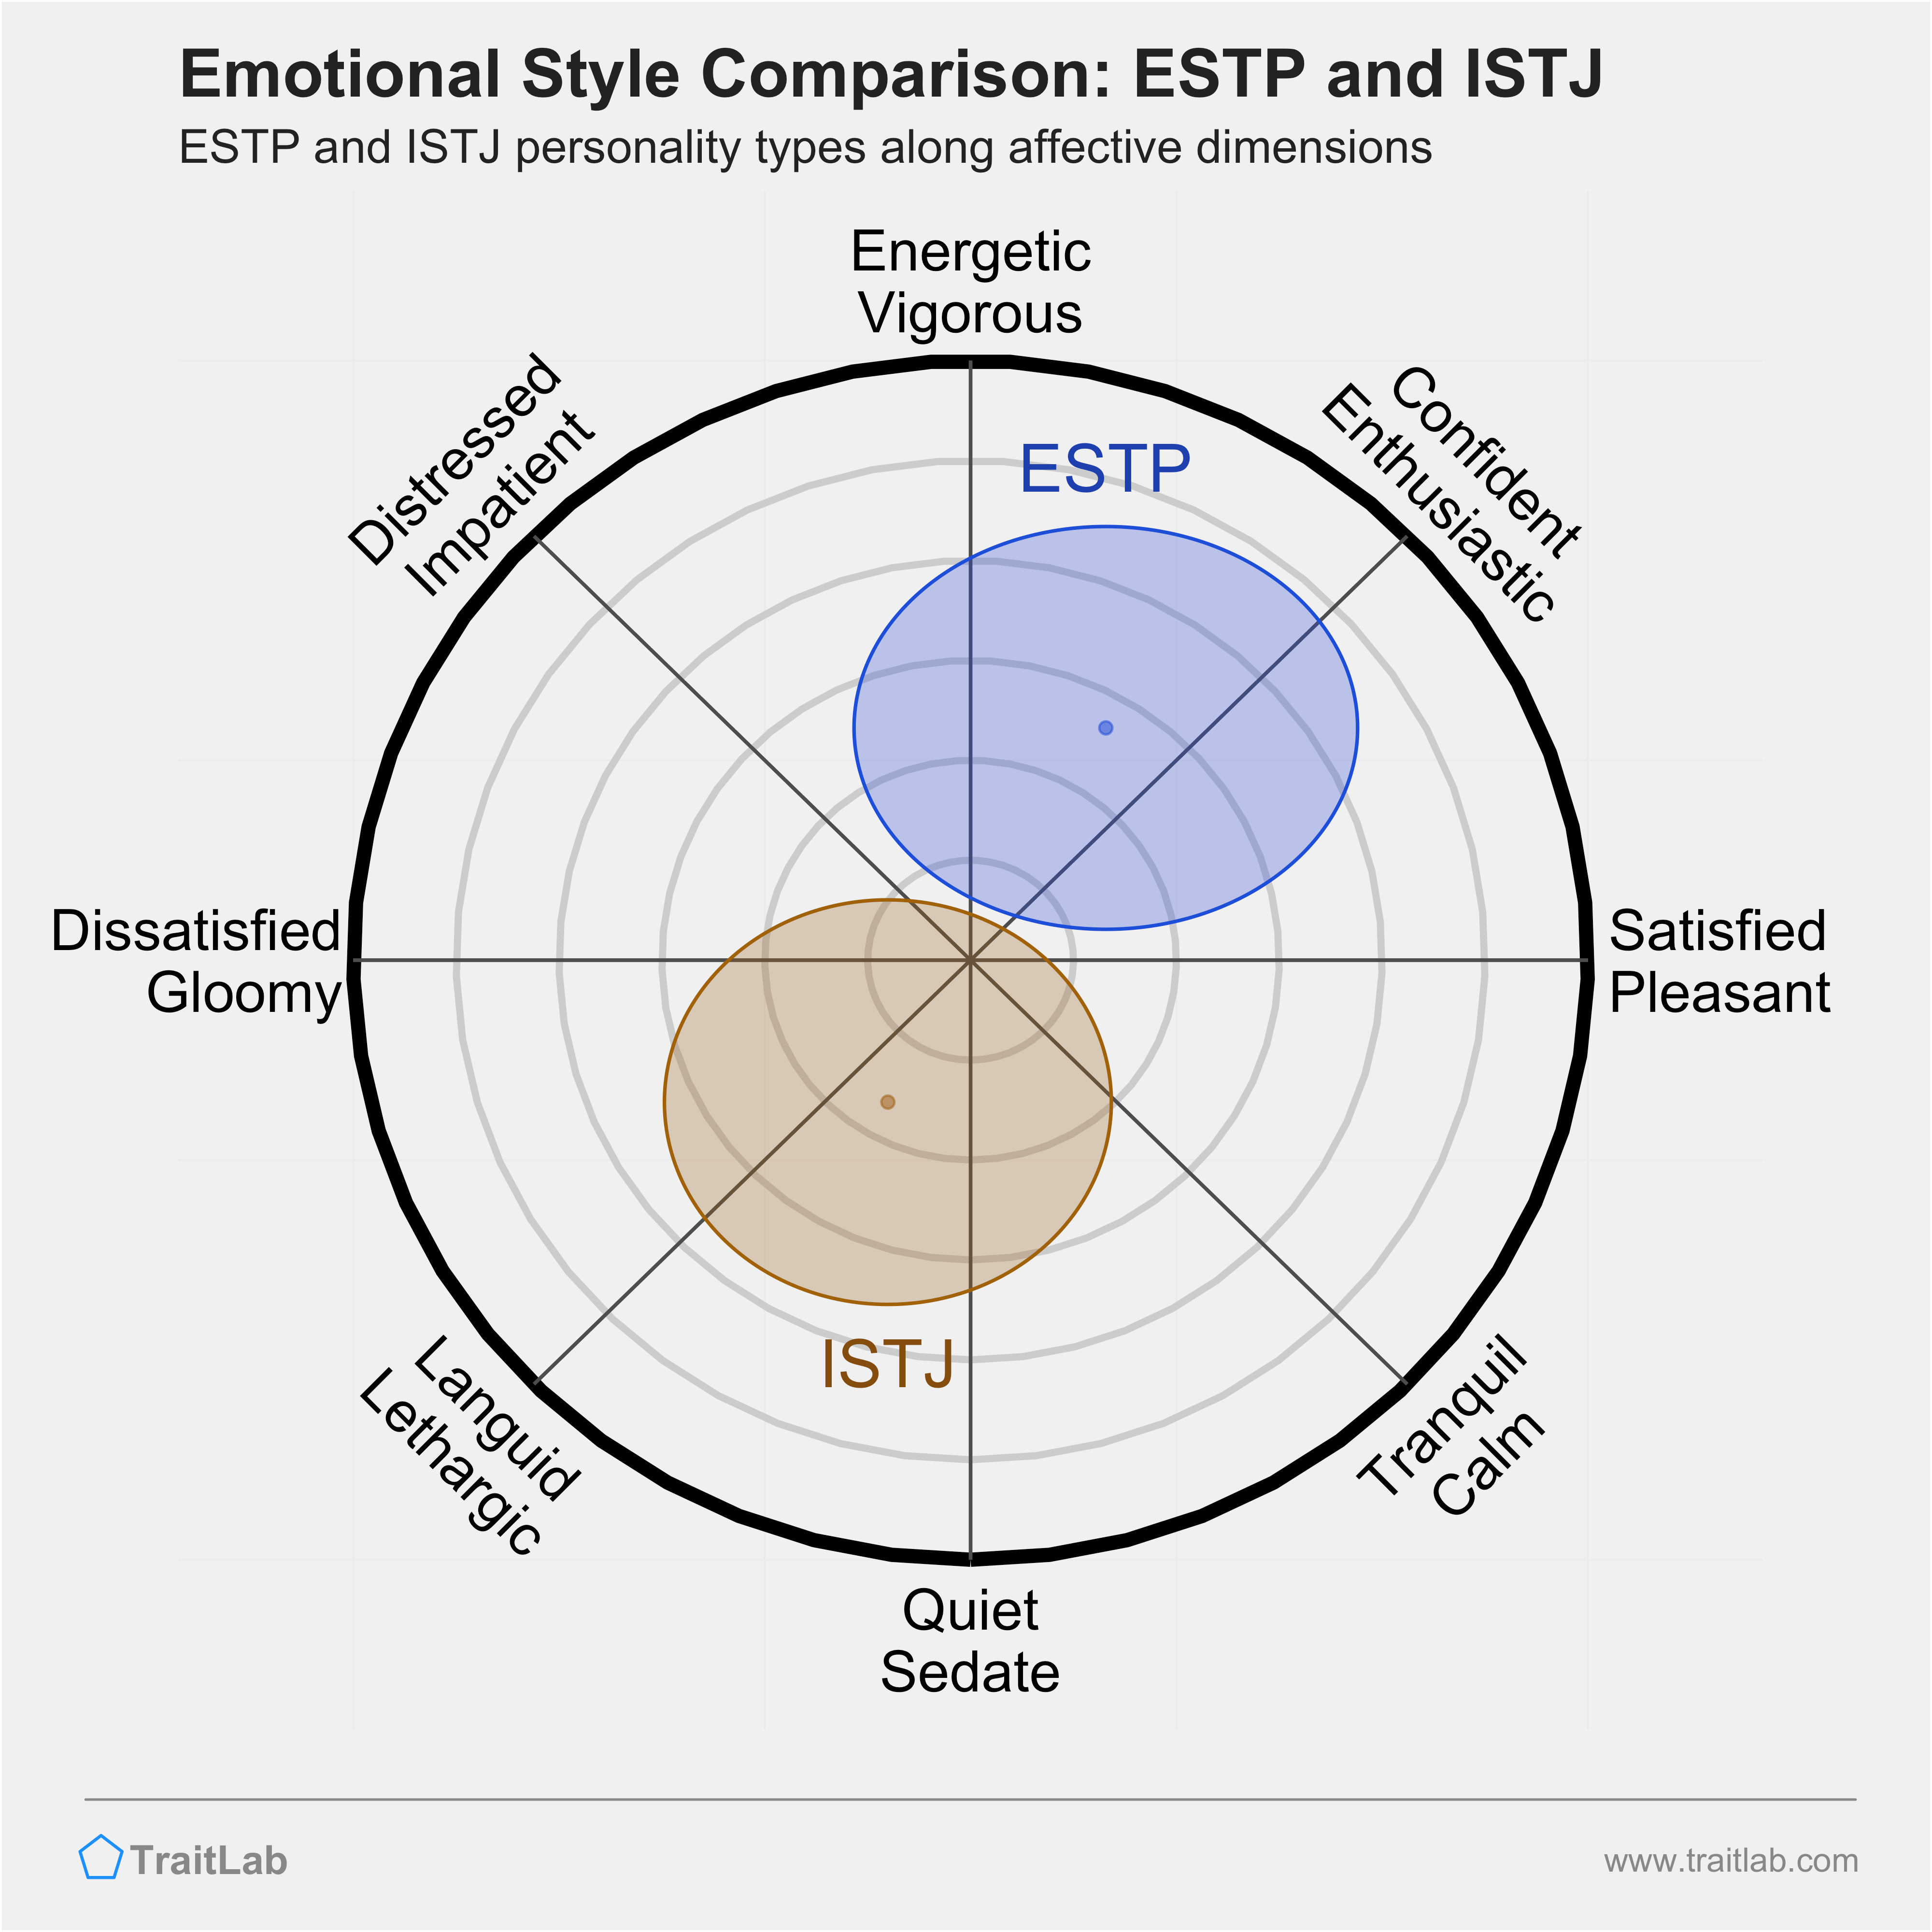 ESTP and ISTJ comparison across emotional (affective) dimensions